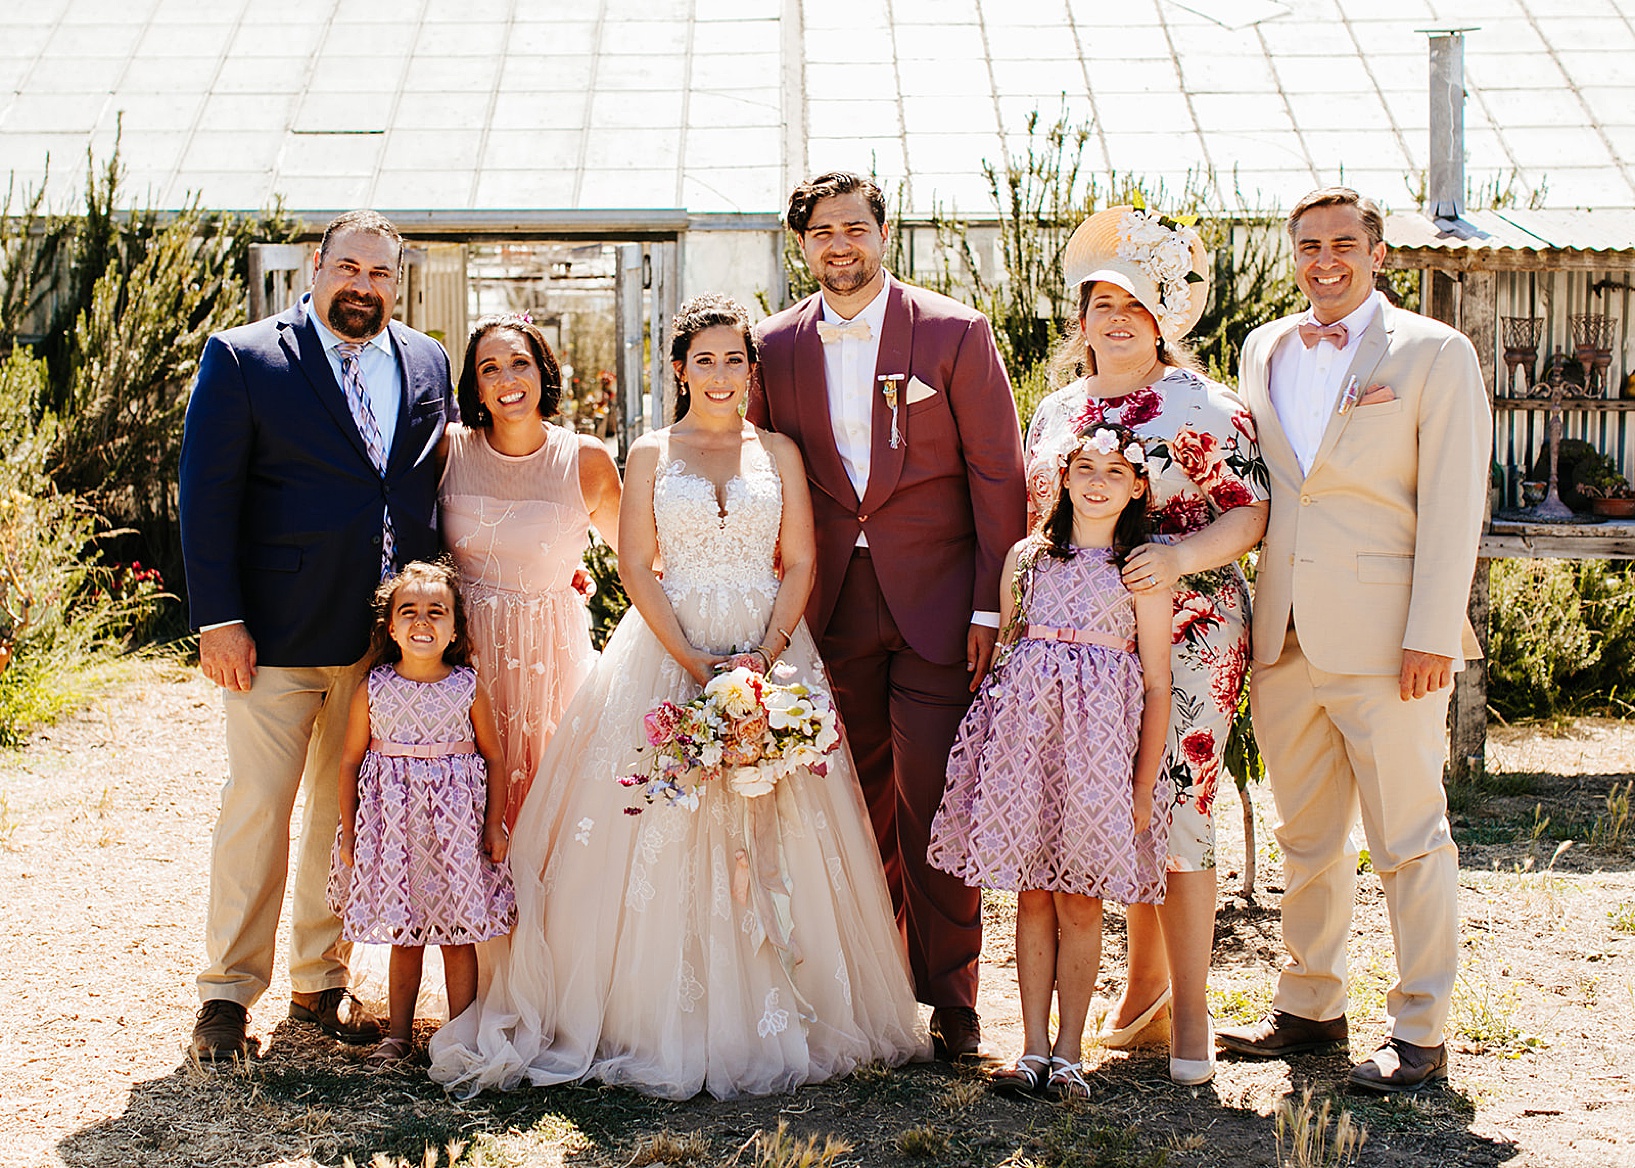 Family Photos for Goleta Wedding at Dos Pueblos Orchid Farm